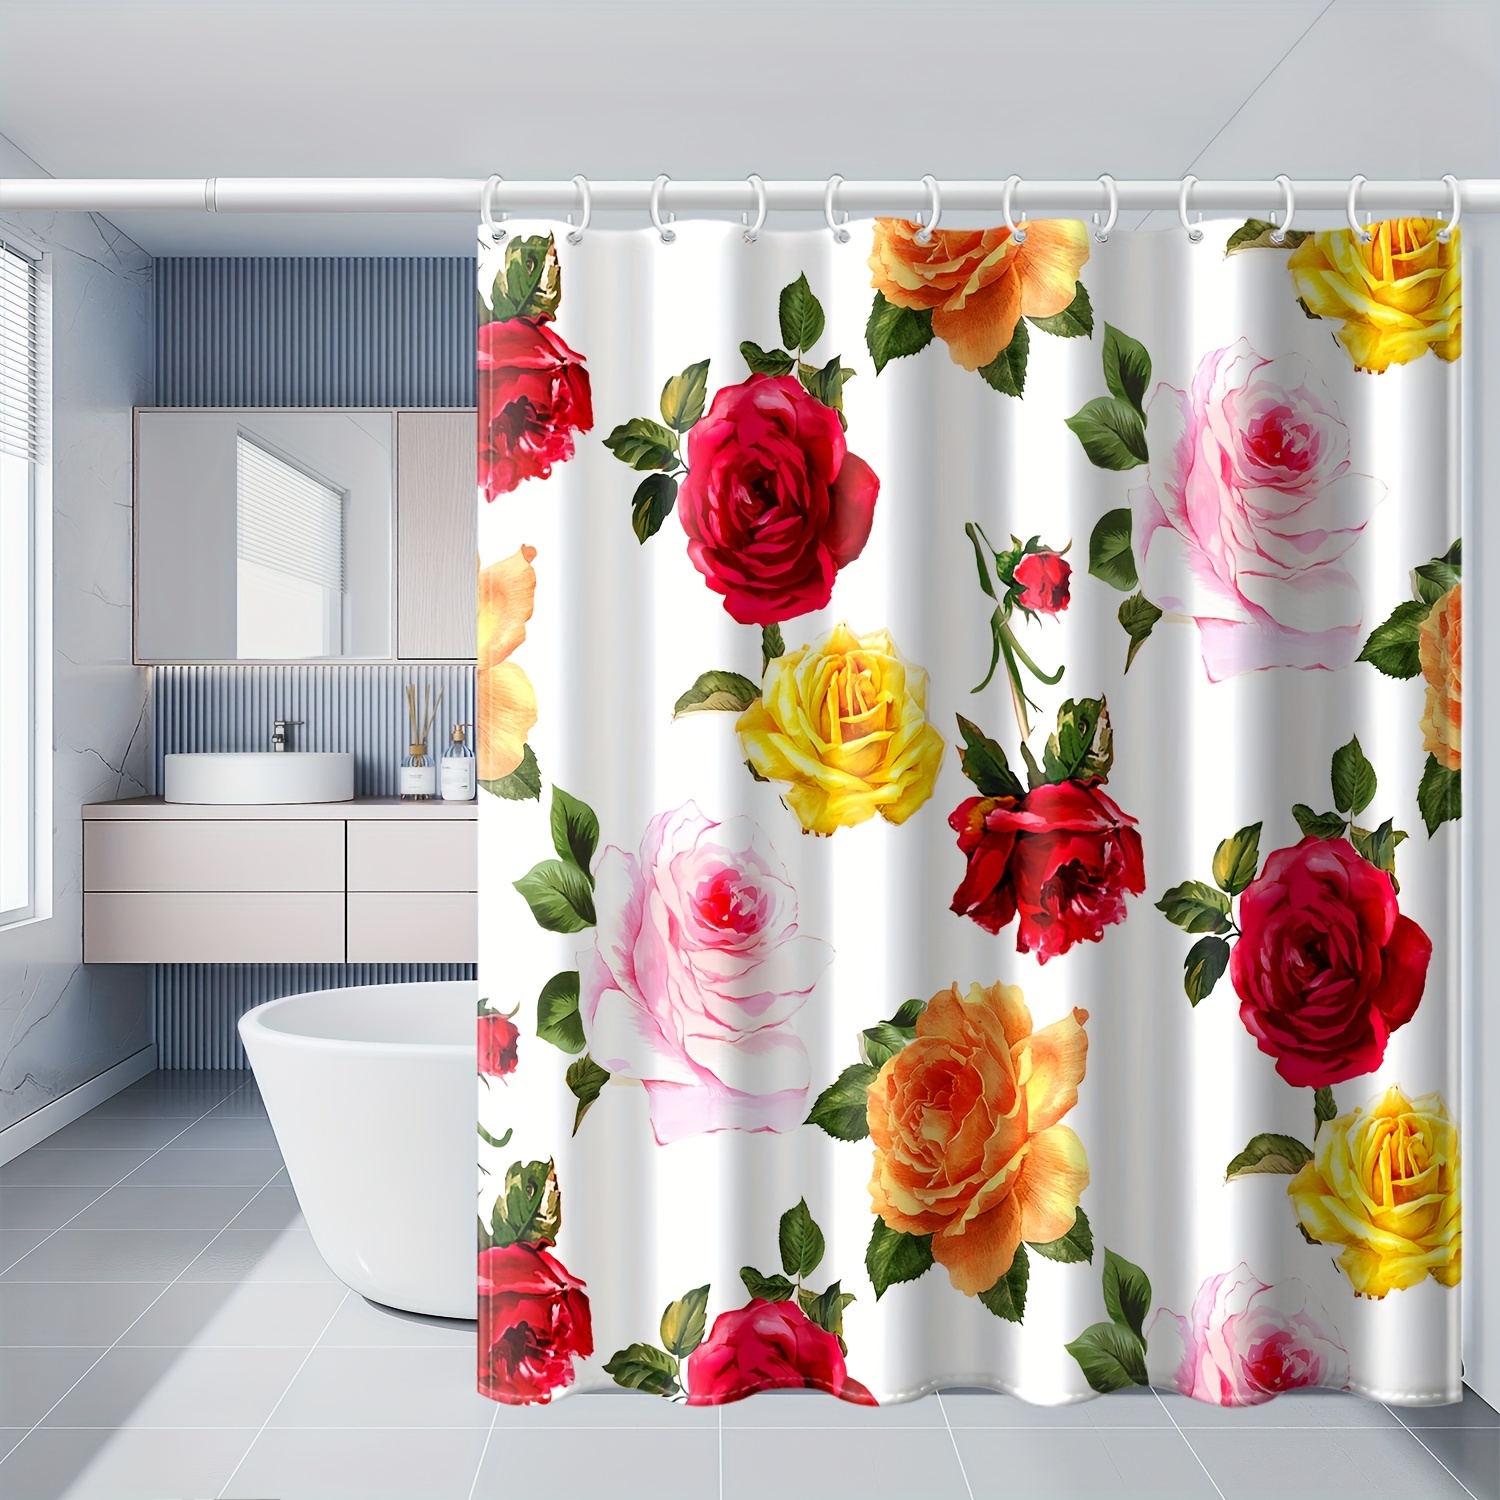 Cortina de ducha blanca para decoración de baño, cortina blanca floral  moderna para baño, cortina de ducha de poliéster impermeable con ganchos,  72 x